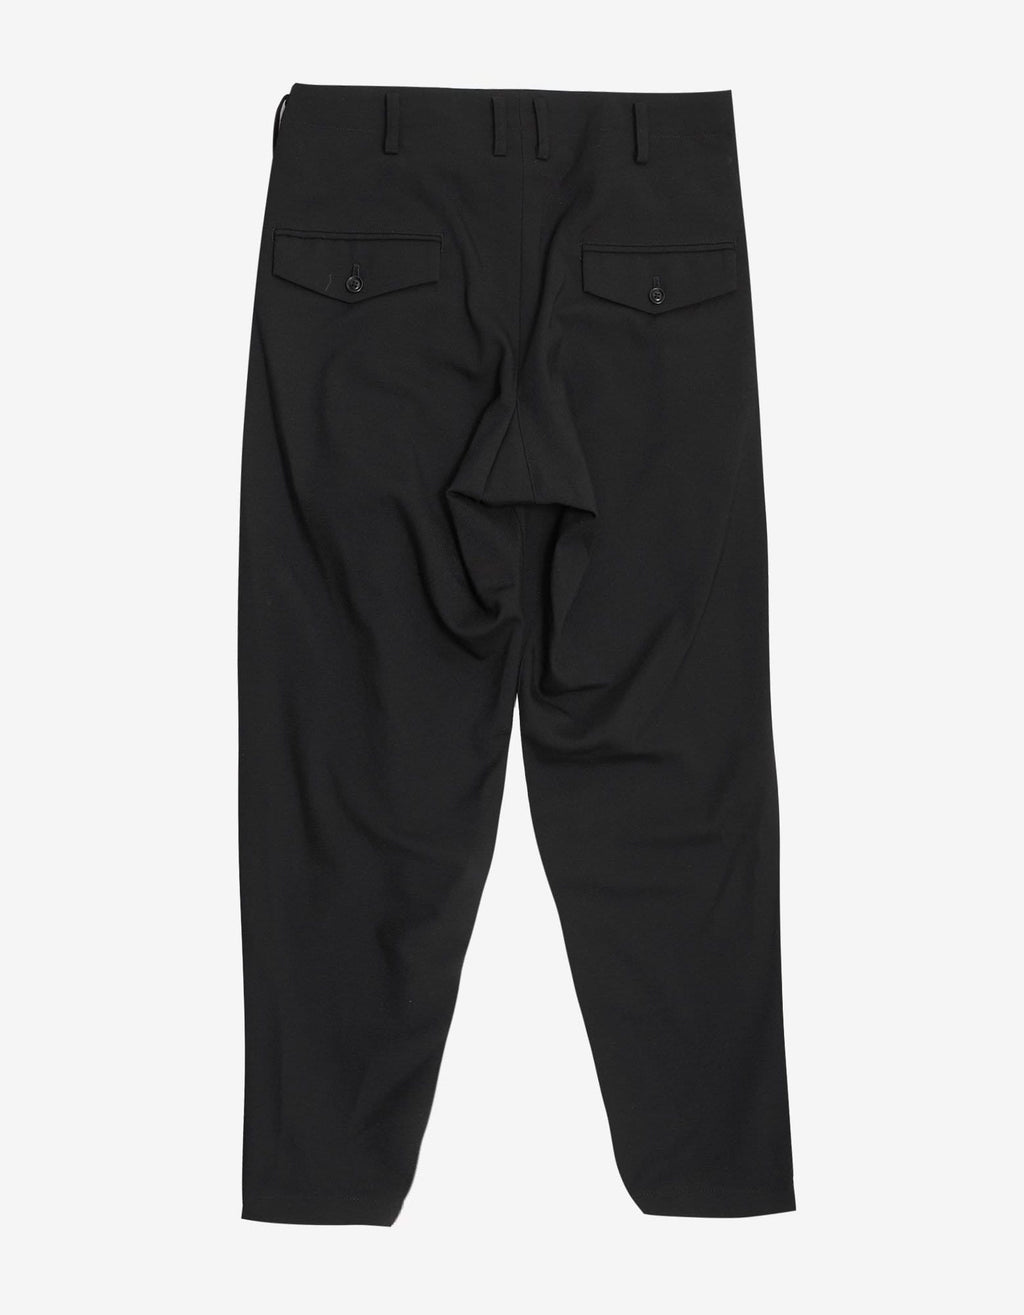 Yohji Yamamoto Black Zip Pocket Trousers